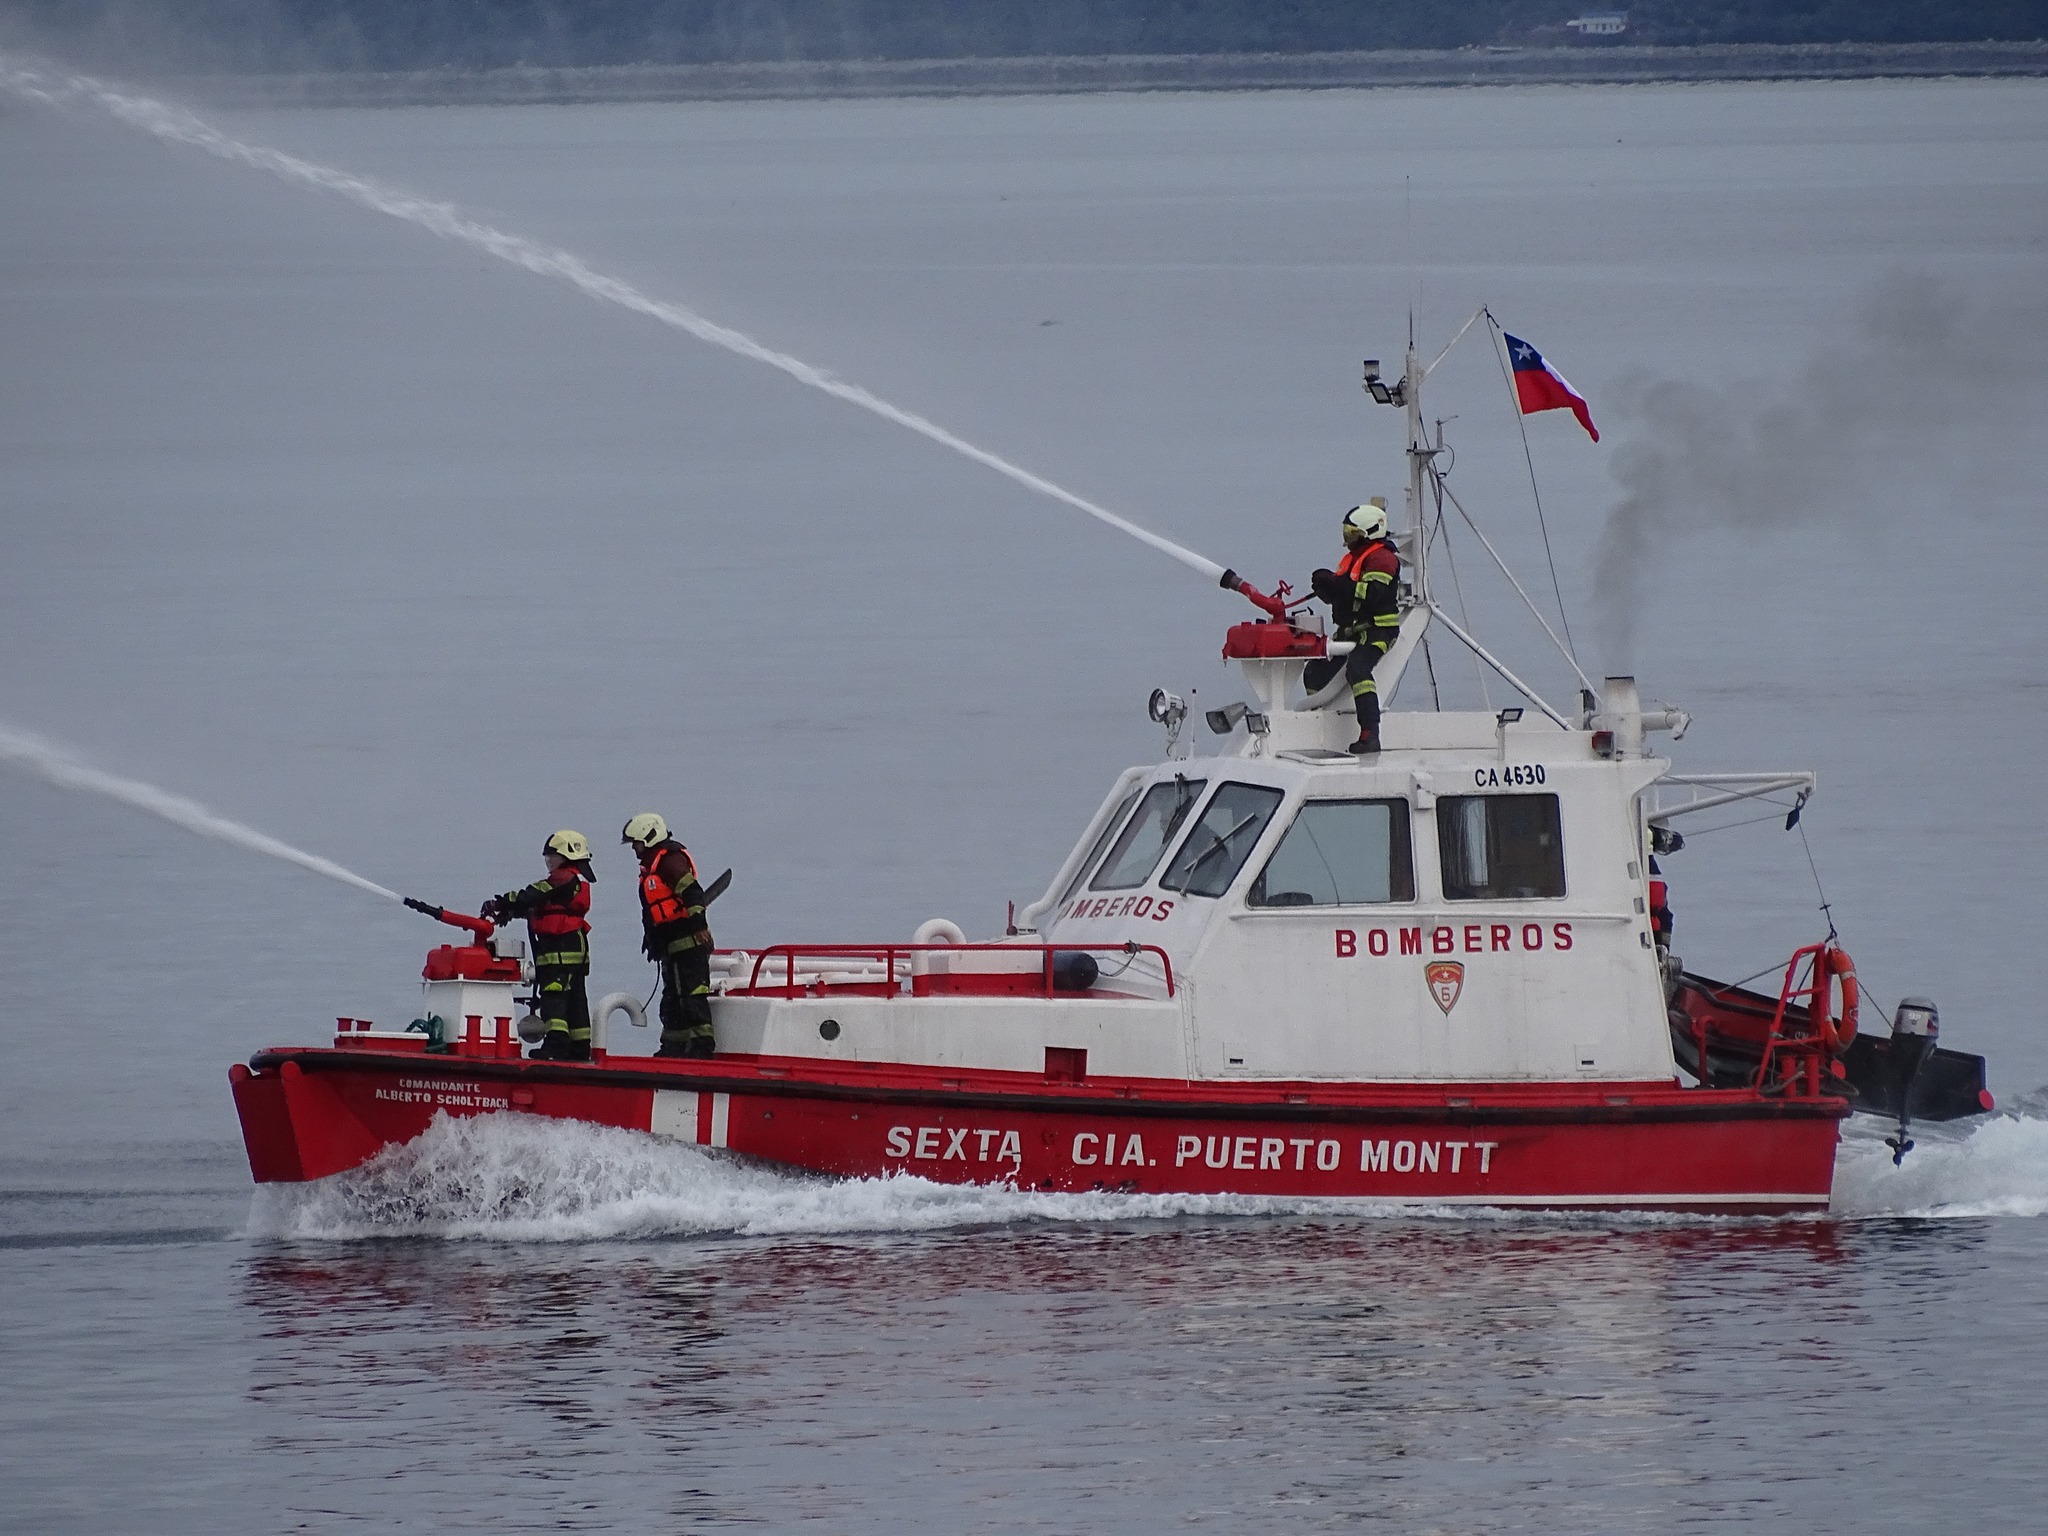 Bomberos de Puerto Montt pone en servicio su primera embarcación de extinción de incendios